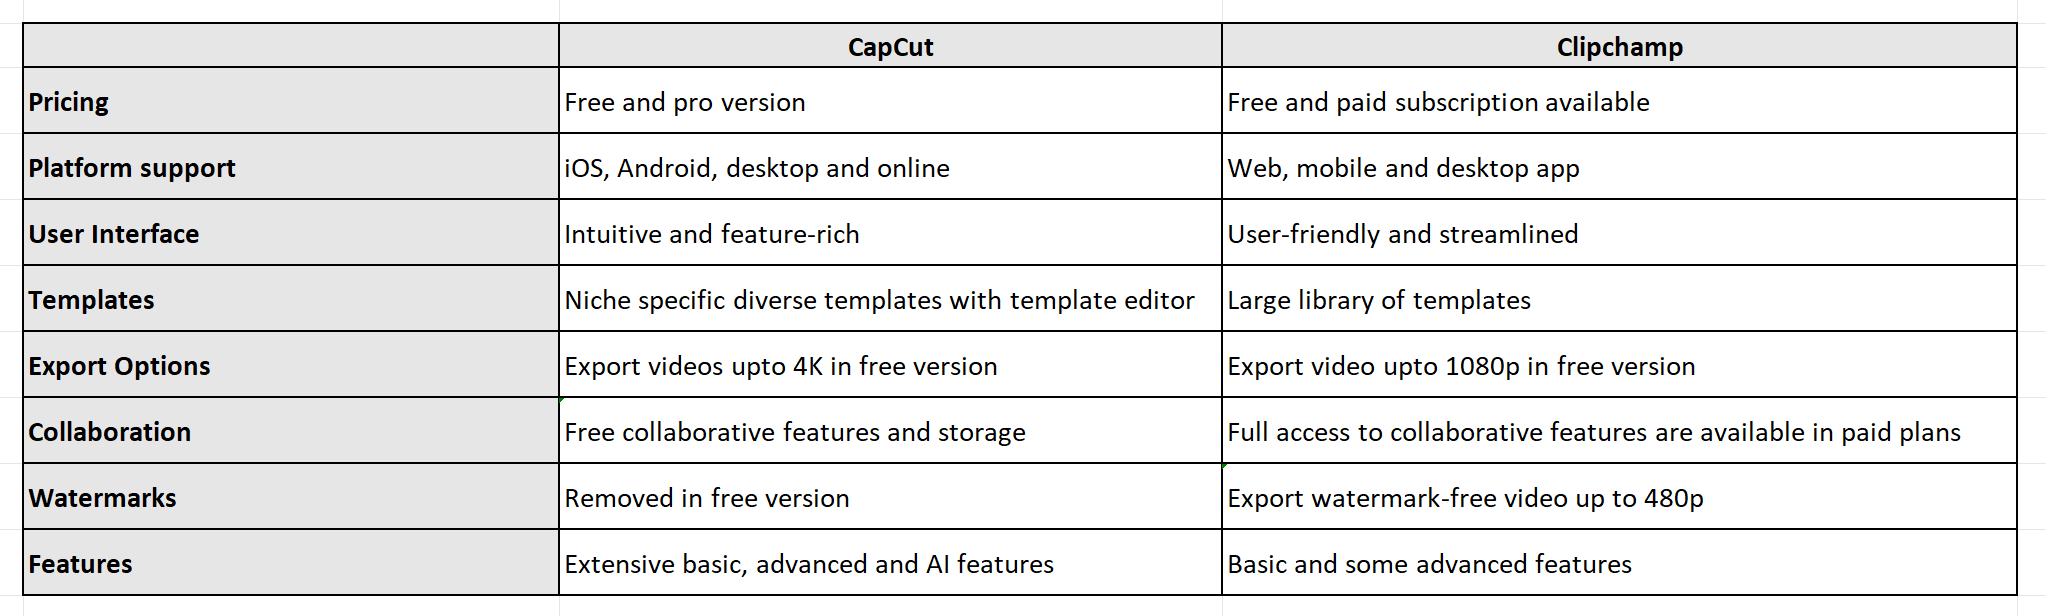 Clipchamp vs CapCut: Quick comparison